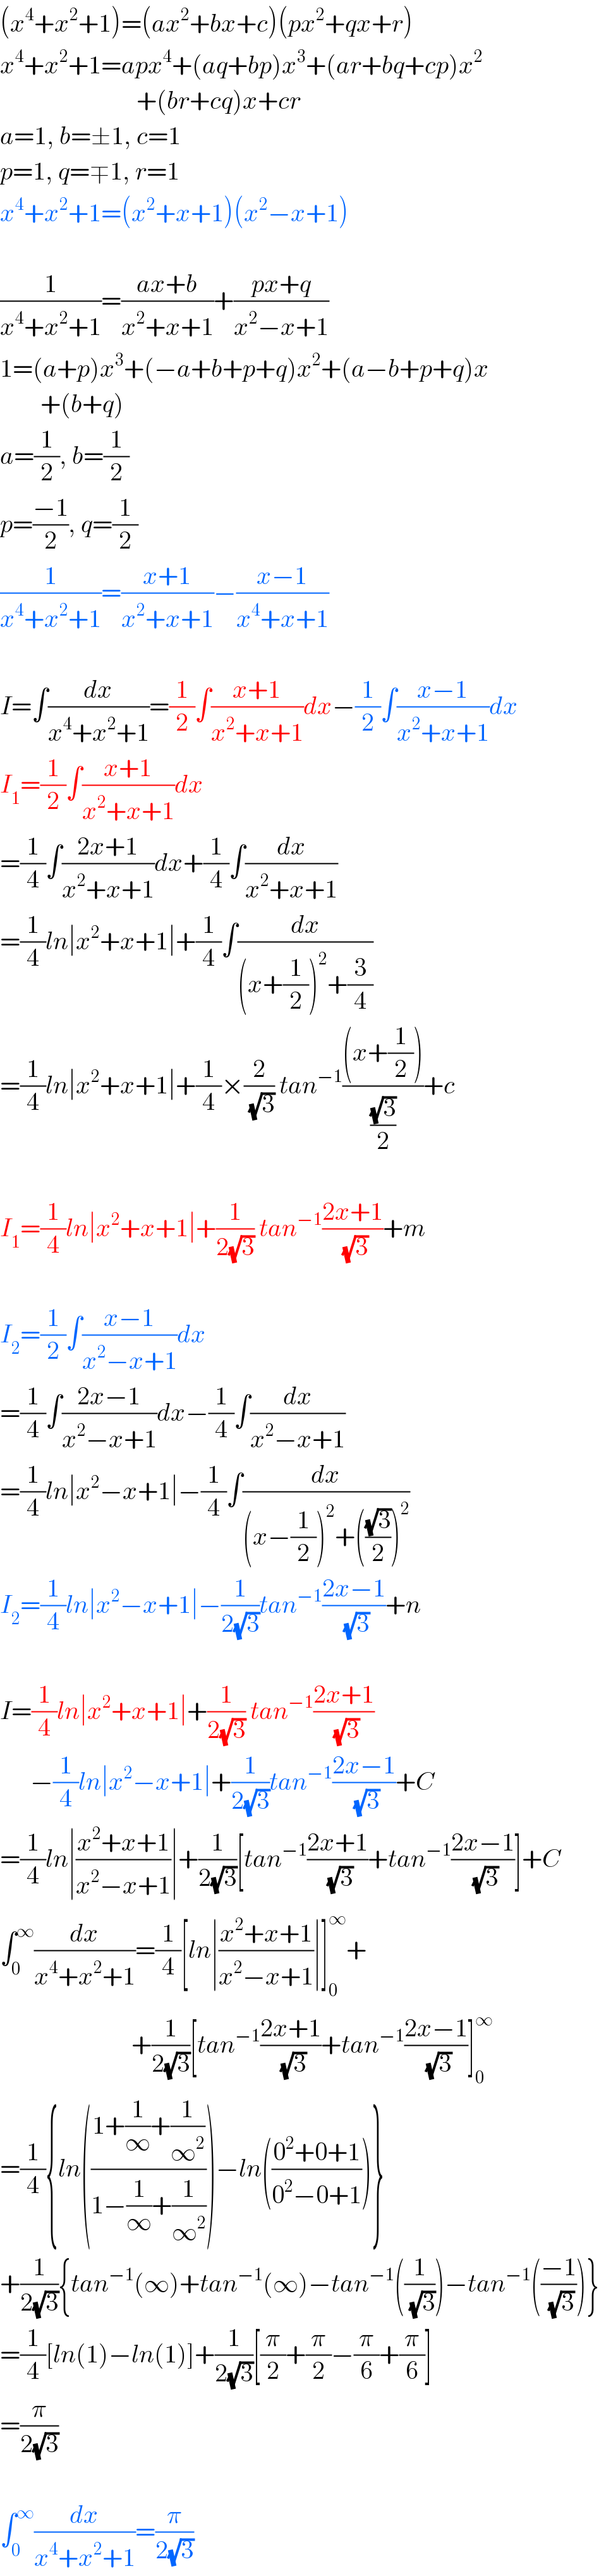 (x^4 +x^2 +1)=(ax^2 +bx+c)(px^2 +qx+r)  x^4 +x^2 +1=apx^4 +(aq+bp)x^3 +(ar+bq+cp)x^2                              +(br+cq)x+cr  a=1, b=±1, c=1  p=1, q=∓1, r=1  x^4 +x^2 +1=(x^2 +x+1)(x^2 −x+1)    (1/(x^4 +x^2 +1))=((ax+b)/(x^2 +x+1))+((px+q)/(x^2 −x+1))  1=(a+p)x^3 +(−a+b+p+q)x^2 +(a−b+p+q)x          +(b+q)  a=(1/2), b=(1/2)  p=((−1)/2), q=(1/2)  (1/(x^4 +x^2 +1))=((x+1)/(x^2 +x+1))−((x−1)/(x^4 +x+1))    I=∫(dx/(x^4 +x^2 +1))=(1/2)∫((x+1)/(x^2 +x+1))dx−(1/2)∫((x−1)/(x^2 +x+1))dx  I_1 =(1/2)∫((x+1)/(x^2 +x+1))dx  =(1/4)∫((2x+1)/(x^2 +x+1))dx+(1/4)∫(dx/(x^2 +x+1))  =(1/4)ln∣x^2 +x+1∣+(1/4)∫(dx/((x+(1/2))^2 +(3/4)))  =(1/4)ln∣x^2 +x+1∣+(1/4)×(2/(√3)) tan^(−1) (((x+(1/2)))/((√3)/2))+c    I_1 =(1/4)ln∣x^2 +x+1∣+(1/(2(√3))) tan^(−1) ((2x+1)/(√3))+m    I_2 =(1/2)∫((x−1)/(x^2 −x+1))dx  =(1/4)∫((2x−1)/(x^2 −x+1))dx−(1/4)∫(dx/(x^2 −x+1))  =(1/4)ln∣x^2 −x+1∣−(1/4)∫(dx/((x−(1/2))^2 +(((√3)/2))^2 ))  I_2 =(1/4)ln∣x^2 −x+1∣−(1/(2(√3)))tan^(−1) ((2x−1)/(√3))+n    I=(1/4)ln∣x^2 +x+1∣+(1/(2(√3))) tan^(−1) ((2x+1)/(√3))        −(1/4)ln∣x^2 −x+1∣+(1/(2(√3)))tan^(−1) ((2x−1)/(√3))+C  =(1/4)ln∣((x^2 +x+1)/(x^2 −x+1))∣+(1/(2(√3)))[tan^(−1) ((2x+1)/(√3))+tan^(−1) ((2x−1)/(√3))]+C  ∫_0 ^∞ (dx/(x^4 +x^2 +1))=(1/4)[ln∣((x^2 +x+1)/(x^2 −x+1))∣]_0 ^∞ +                            +(1/(2(√3)))[tan^(−1) ((2x+1)/(√3))+tan^(−1) ((2x−1)/(√3))]_0 ^∞   =(1/4){ln(((1+(1/∞)+(1/∞^2 ))/(1−(1/∞)+(1/∞^2 ))))−ln(((0^2 +0+1)/(0^2 −0+1)))}  +(1/(2(√3))){tan^(−1) (∞)+tan^(−1) (∞)−tan^(−1) ((1/(√3)))−tan^(−1) (((−1)/(√3)))}  =(1/4)[ln(1)−ln(1)]+(1/(2(√3)))[(π/2)+(π/2)−(π/6)+(π/6)]  =(π/(2(√3)))    ∫_0 ^∞ (dx/(x^4 +x^2 +1))=(π/(2(√3)))  